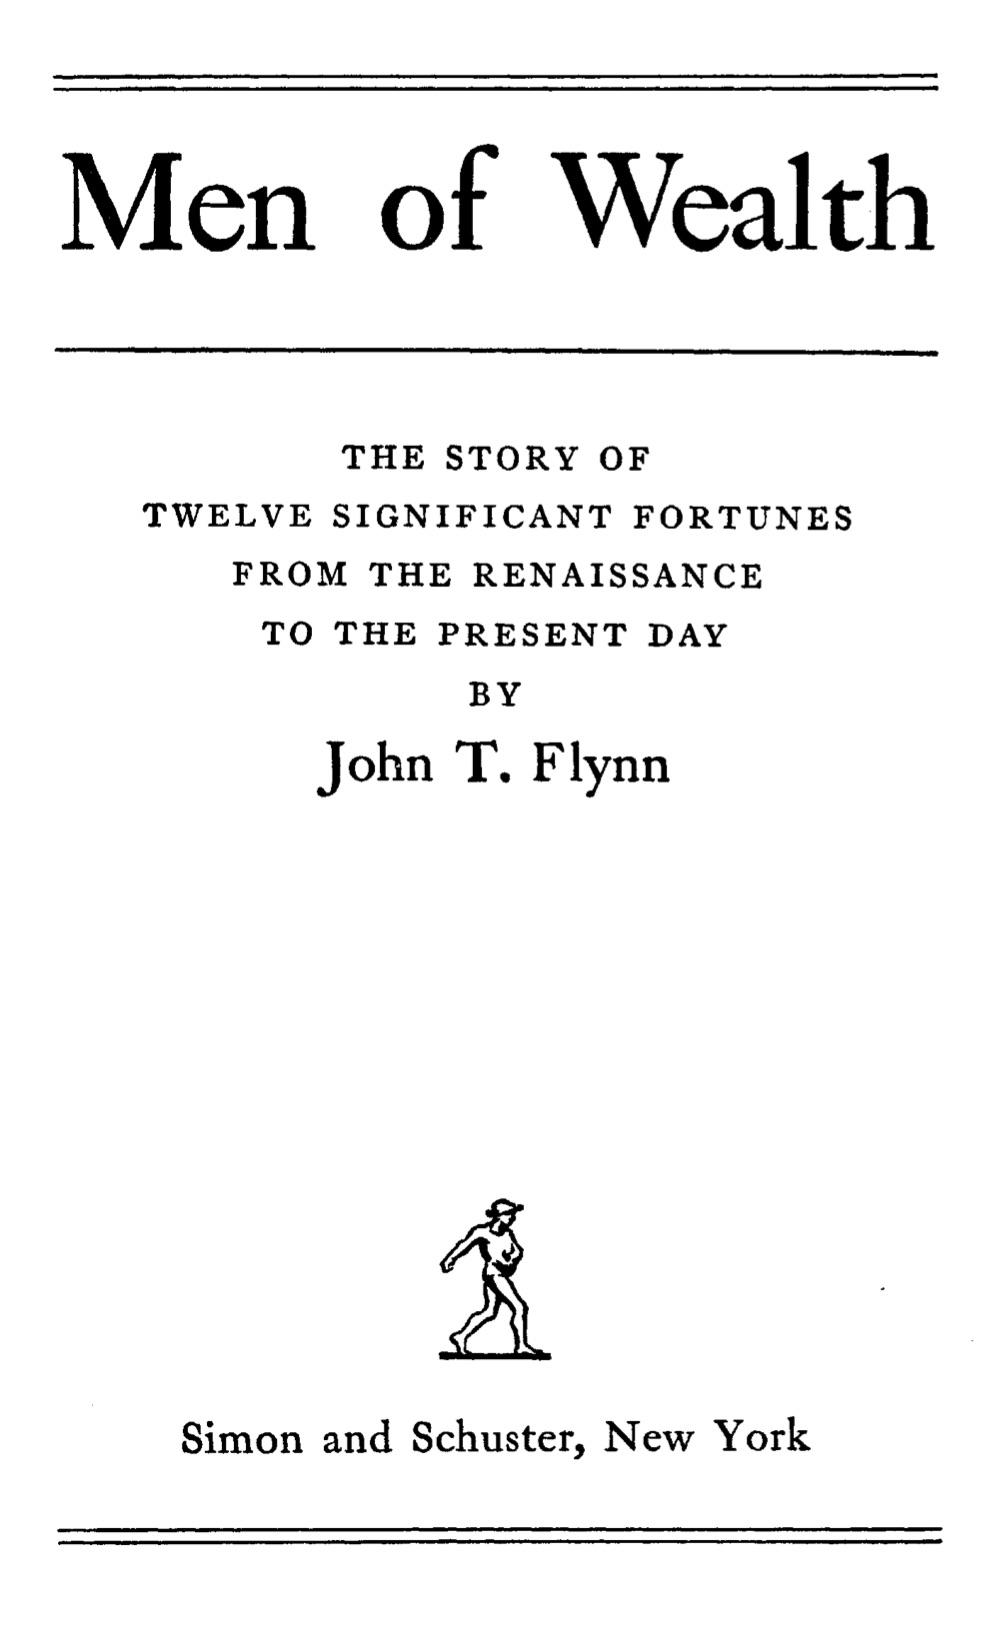 Men of Wealth (1941) by John T. Flynn